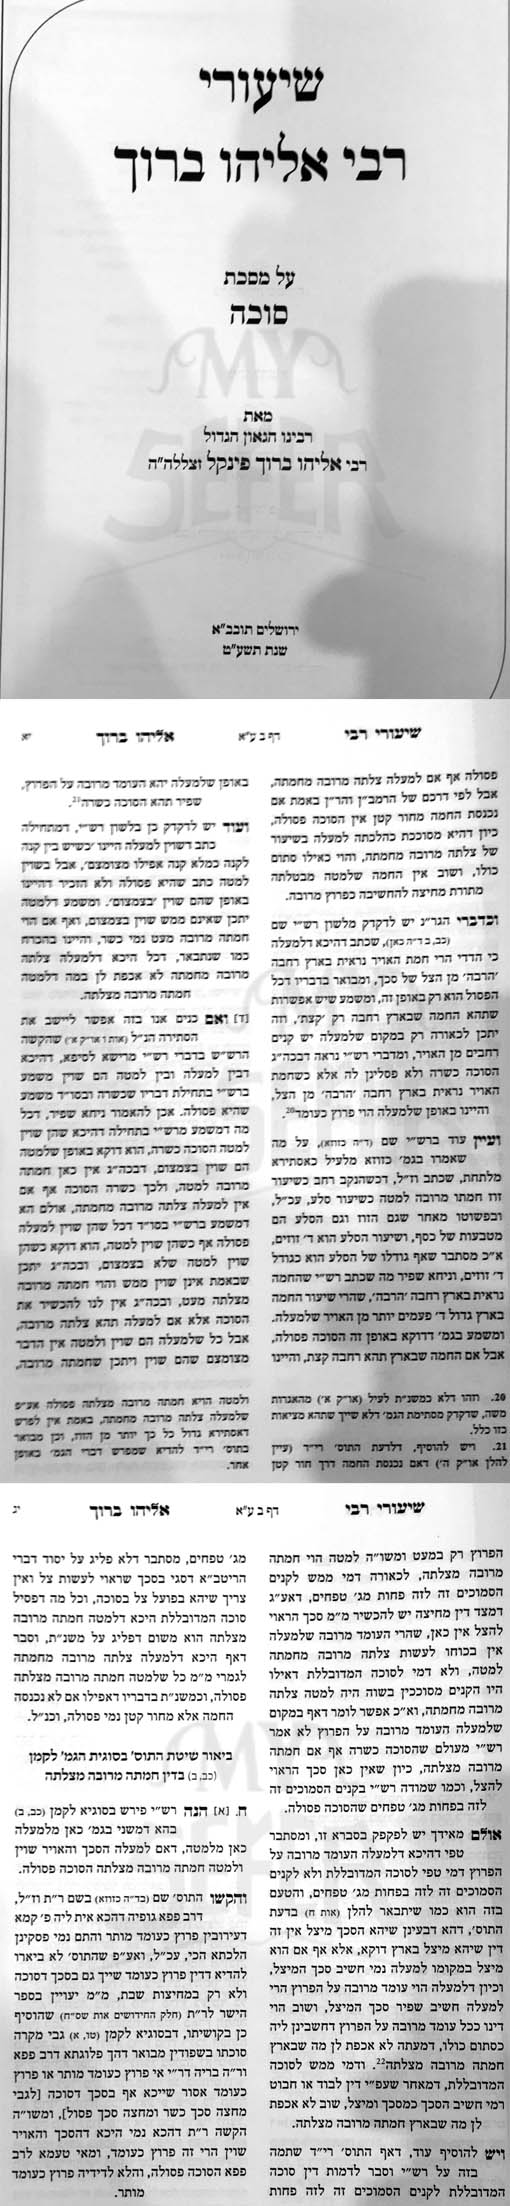 Shiurei Rabbi Eliyahu Baruch - Masechet Succah